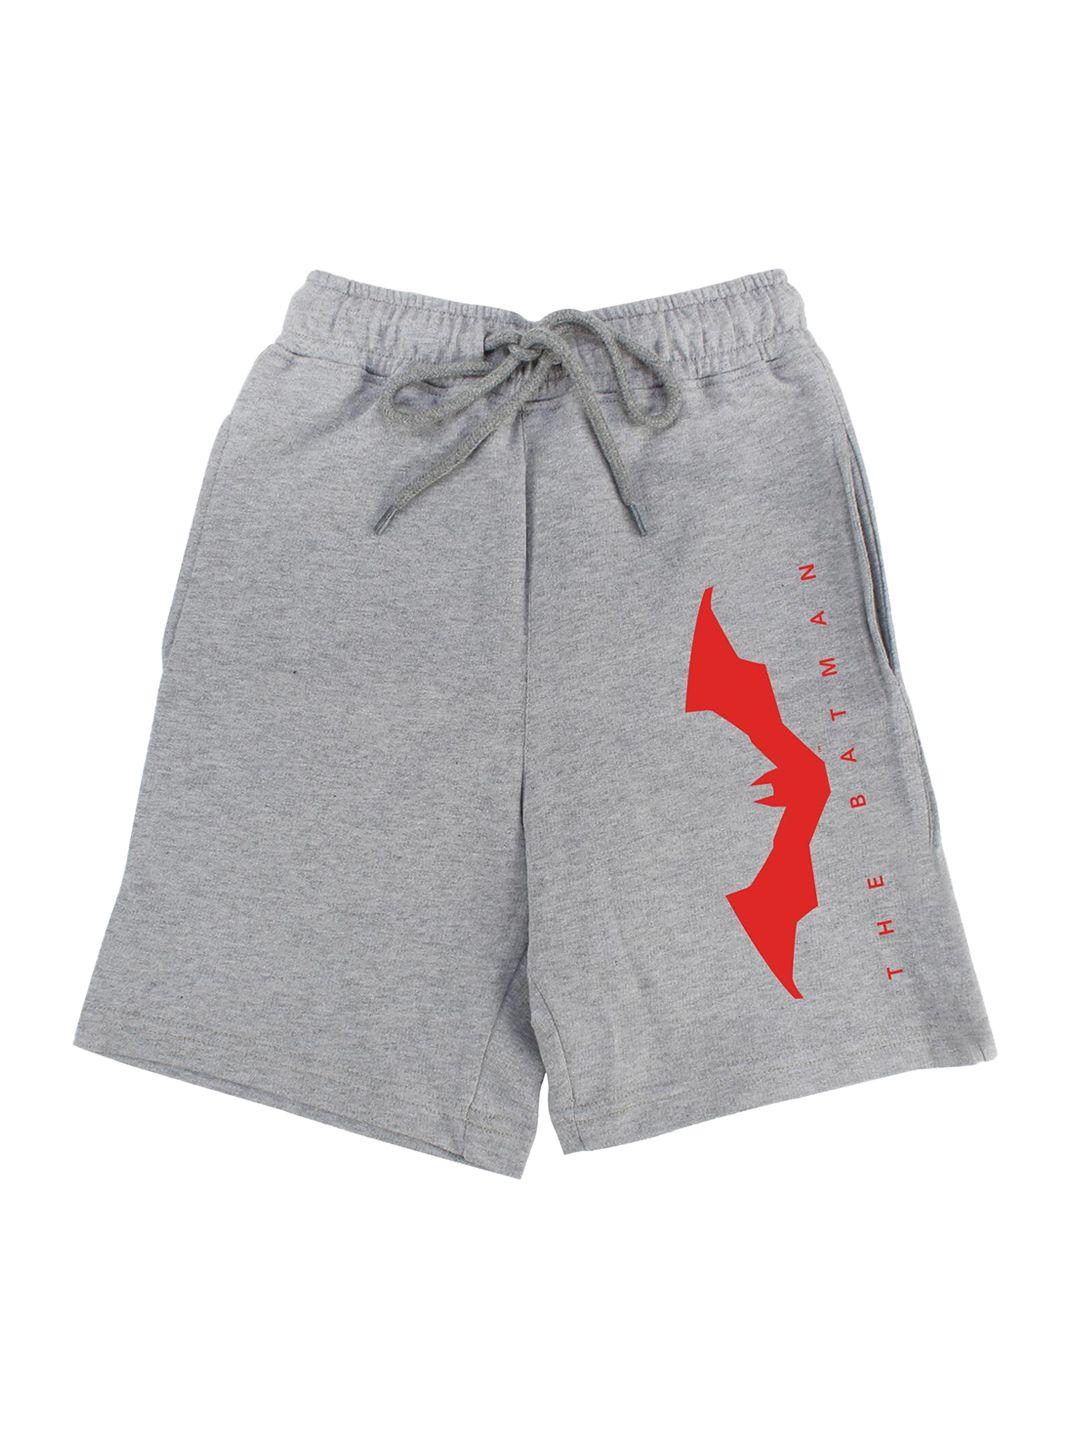 dc by wear your mind boys grey batman printed shorts